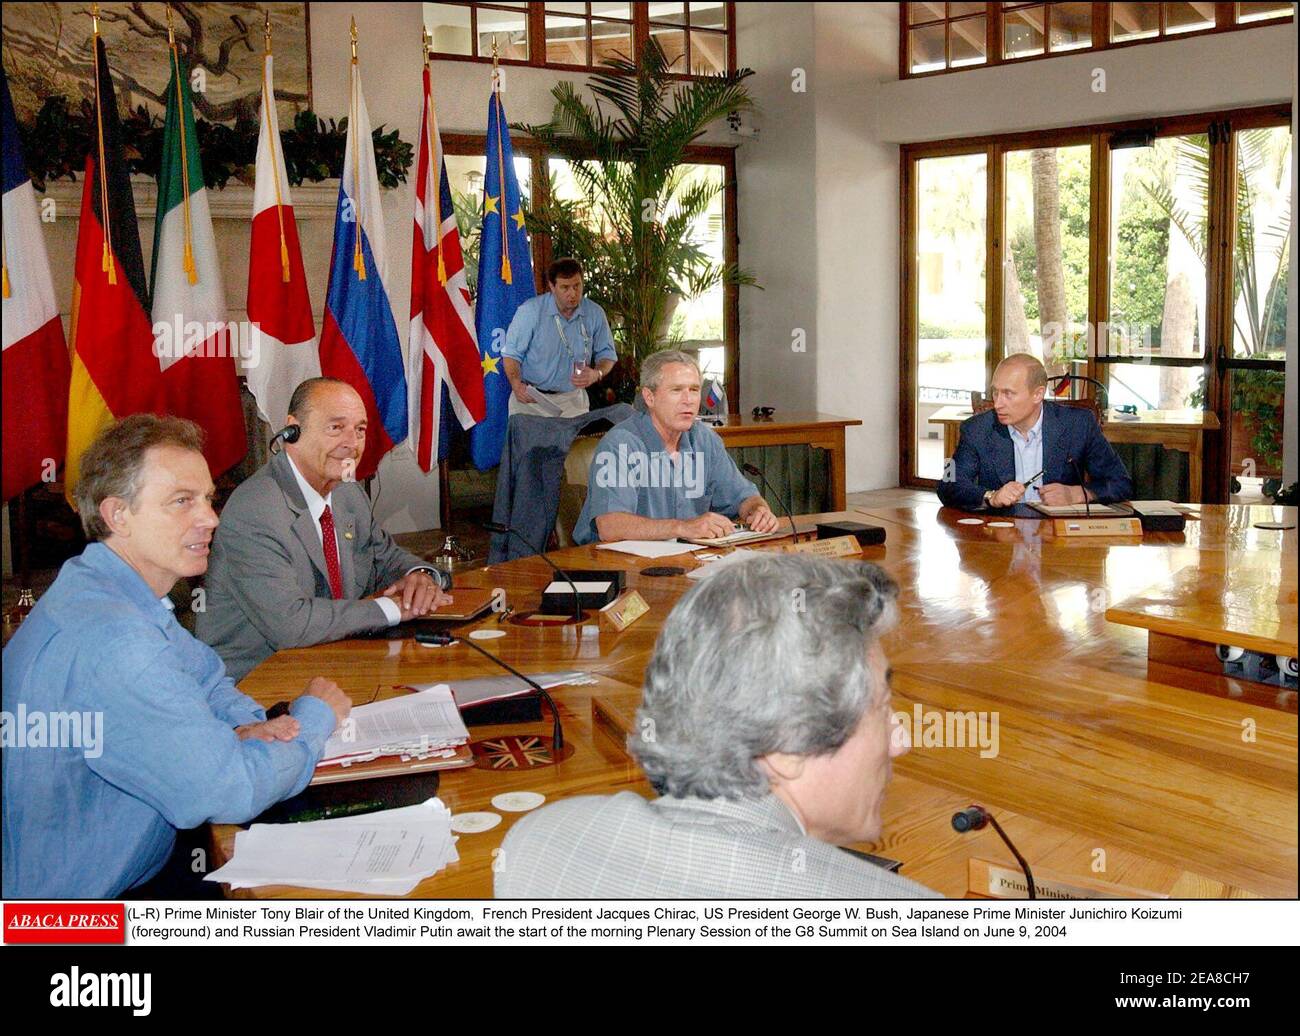 (G-D) le Premier ministre britannique Tony Blair, le président français Jacques Chirac, le président américain George W. Bush, le premier ministre japonais Junichiro Koizumi (premier plan) et le président russe Vladimir Poutine attendent le début de la séance plénière matinale du Sommet du G8 sur Sea Island le 9 juin 2004 Banque D'Images